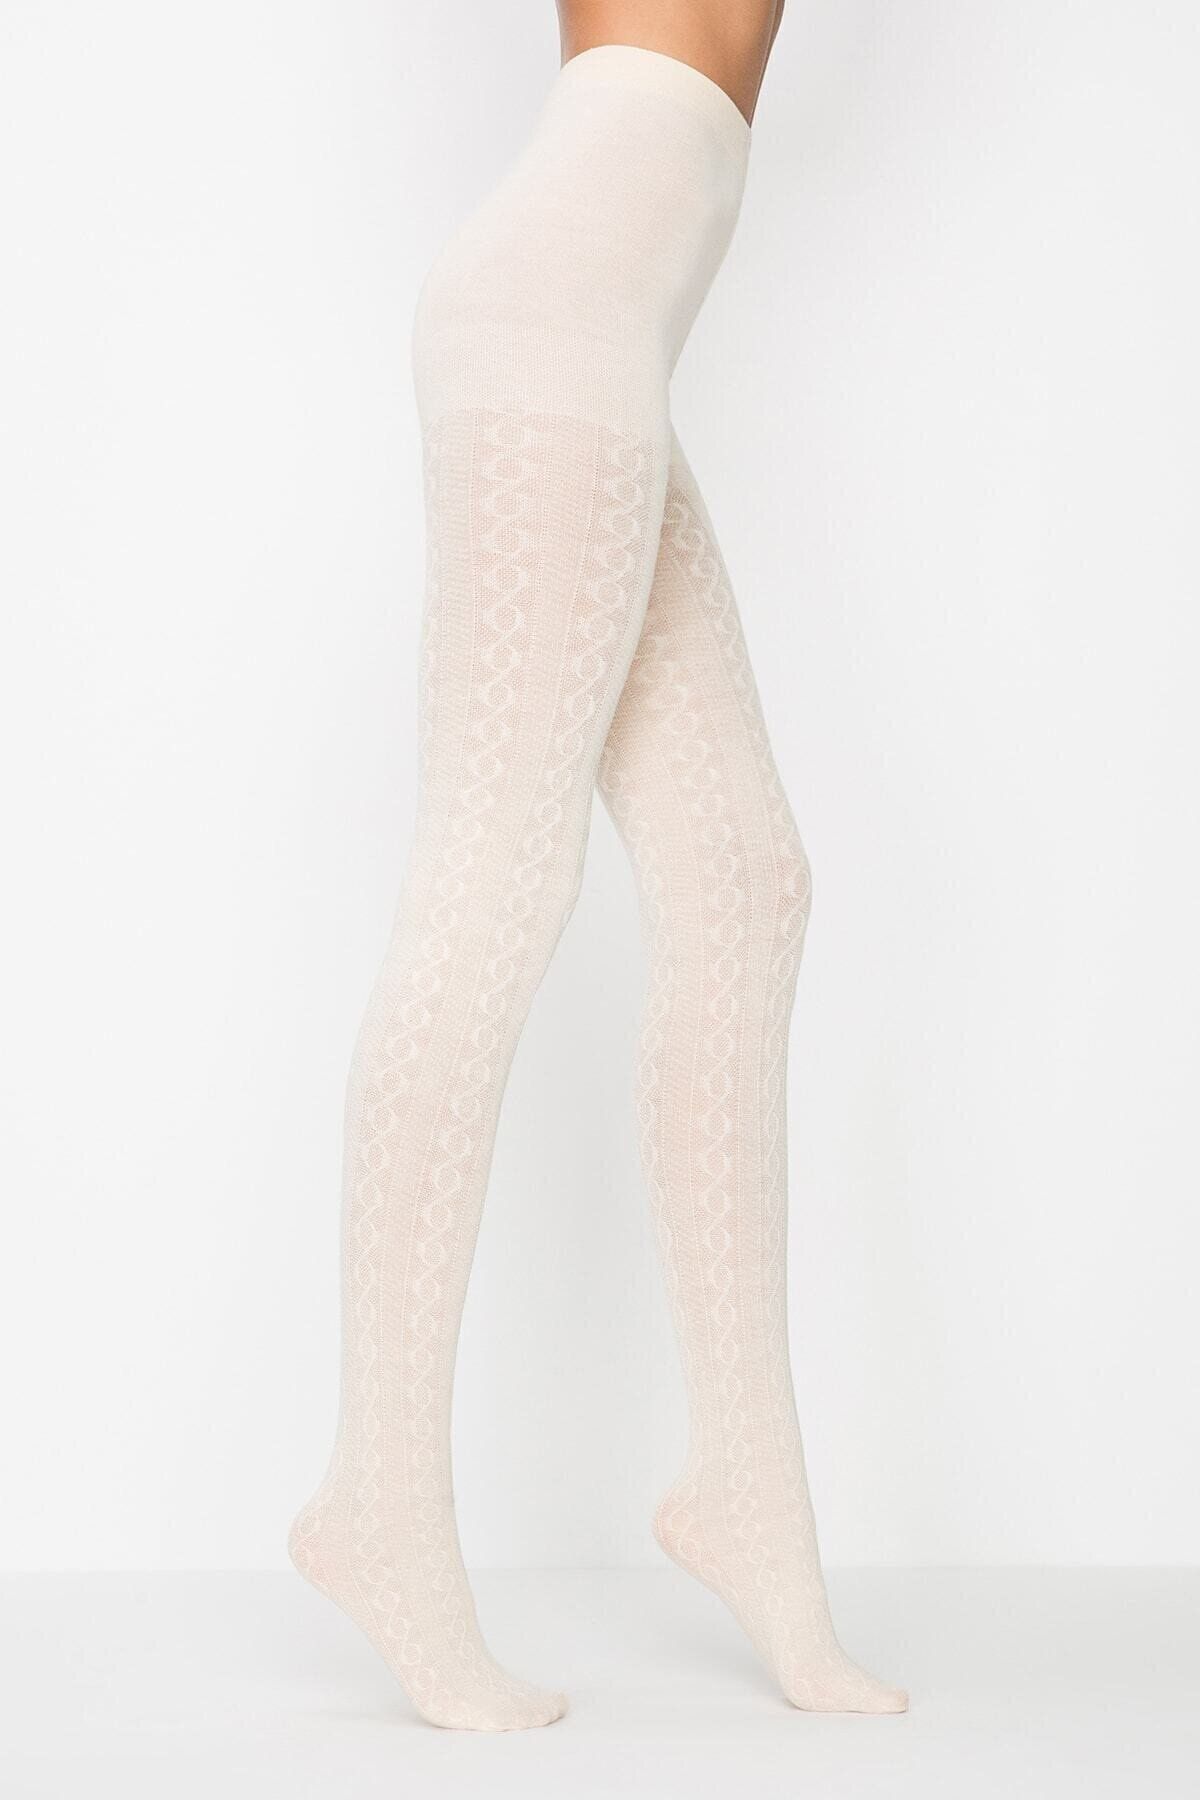 Kadın Külotlu Çorap Modelleri Ve Fiyatları - Fashion Orta File